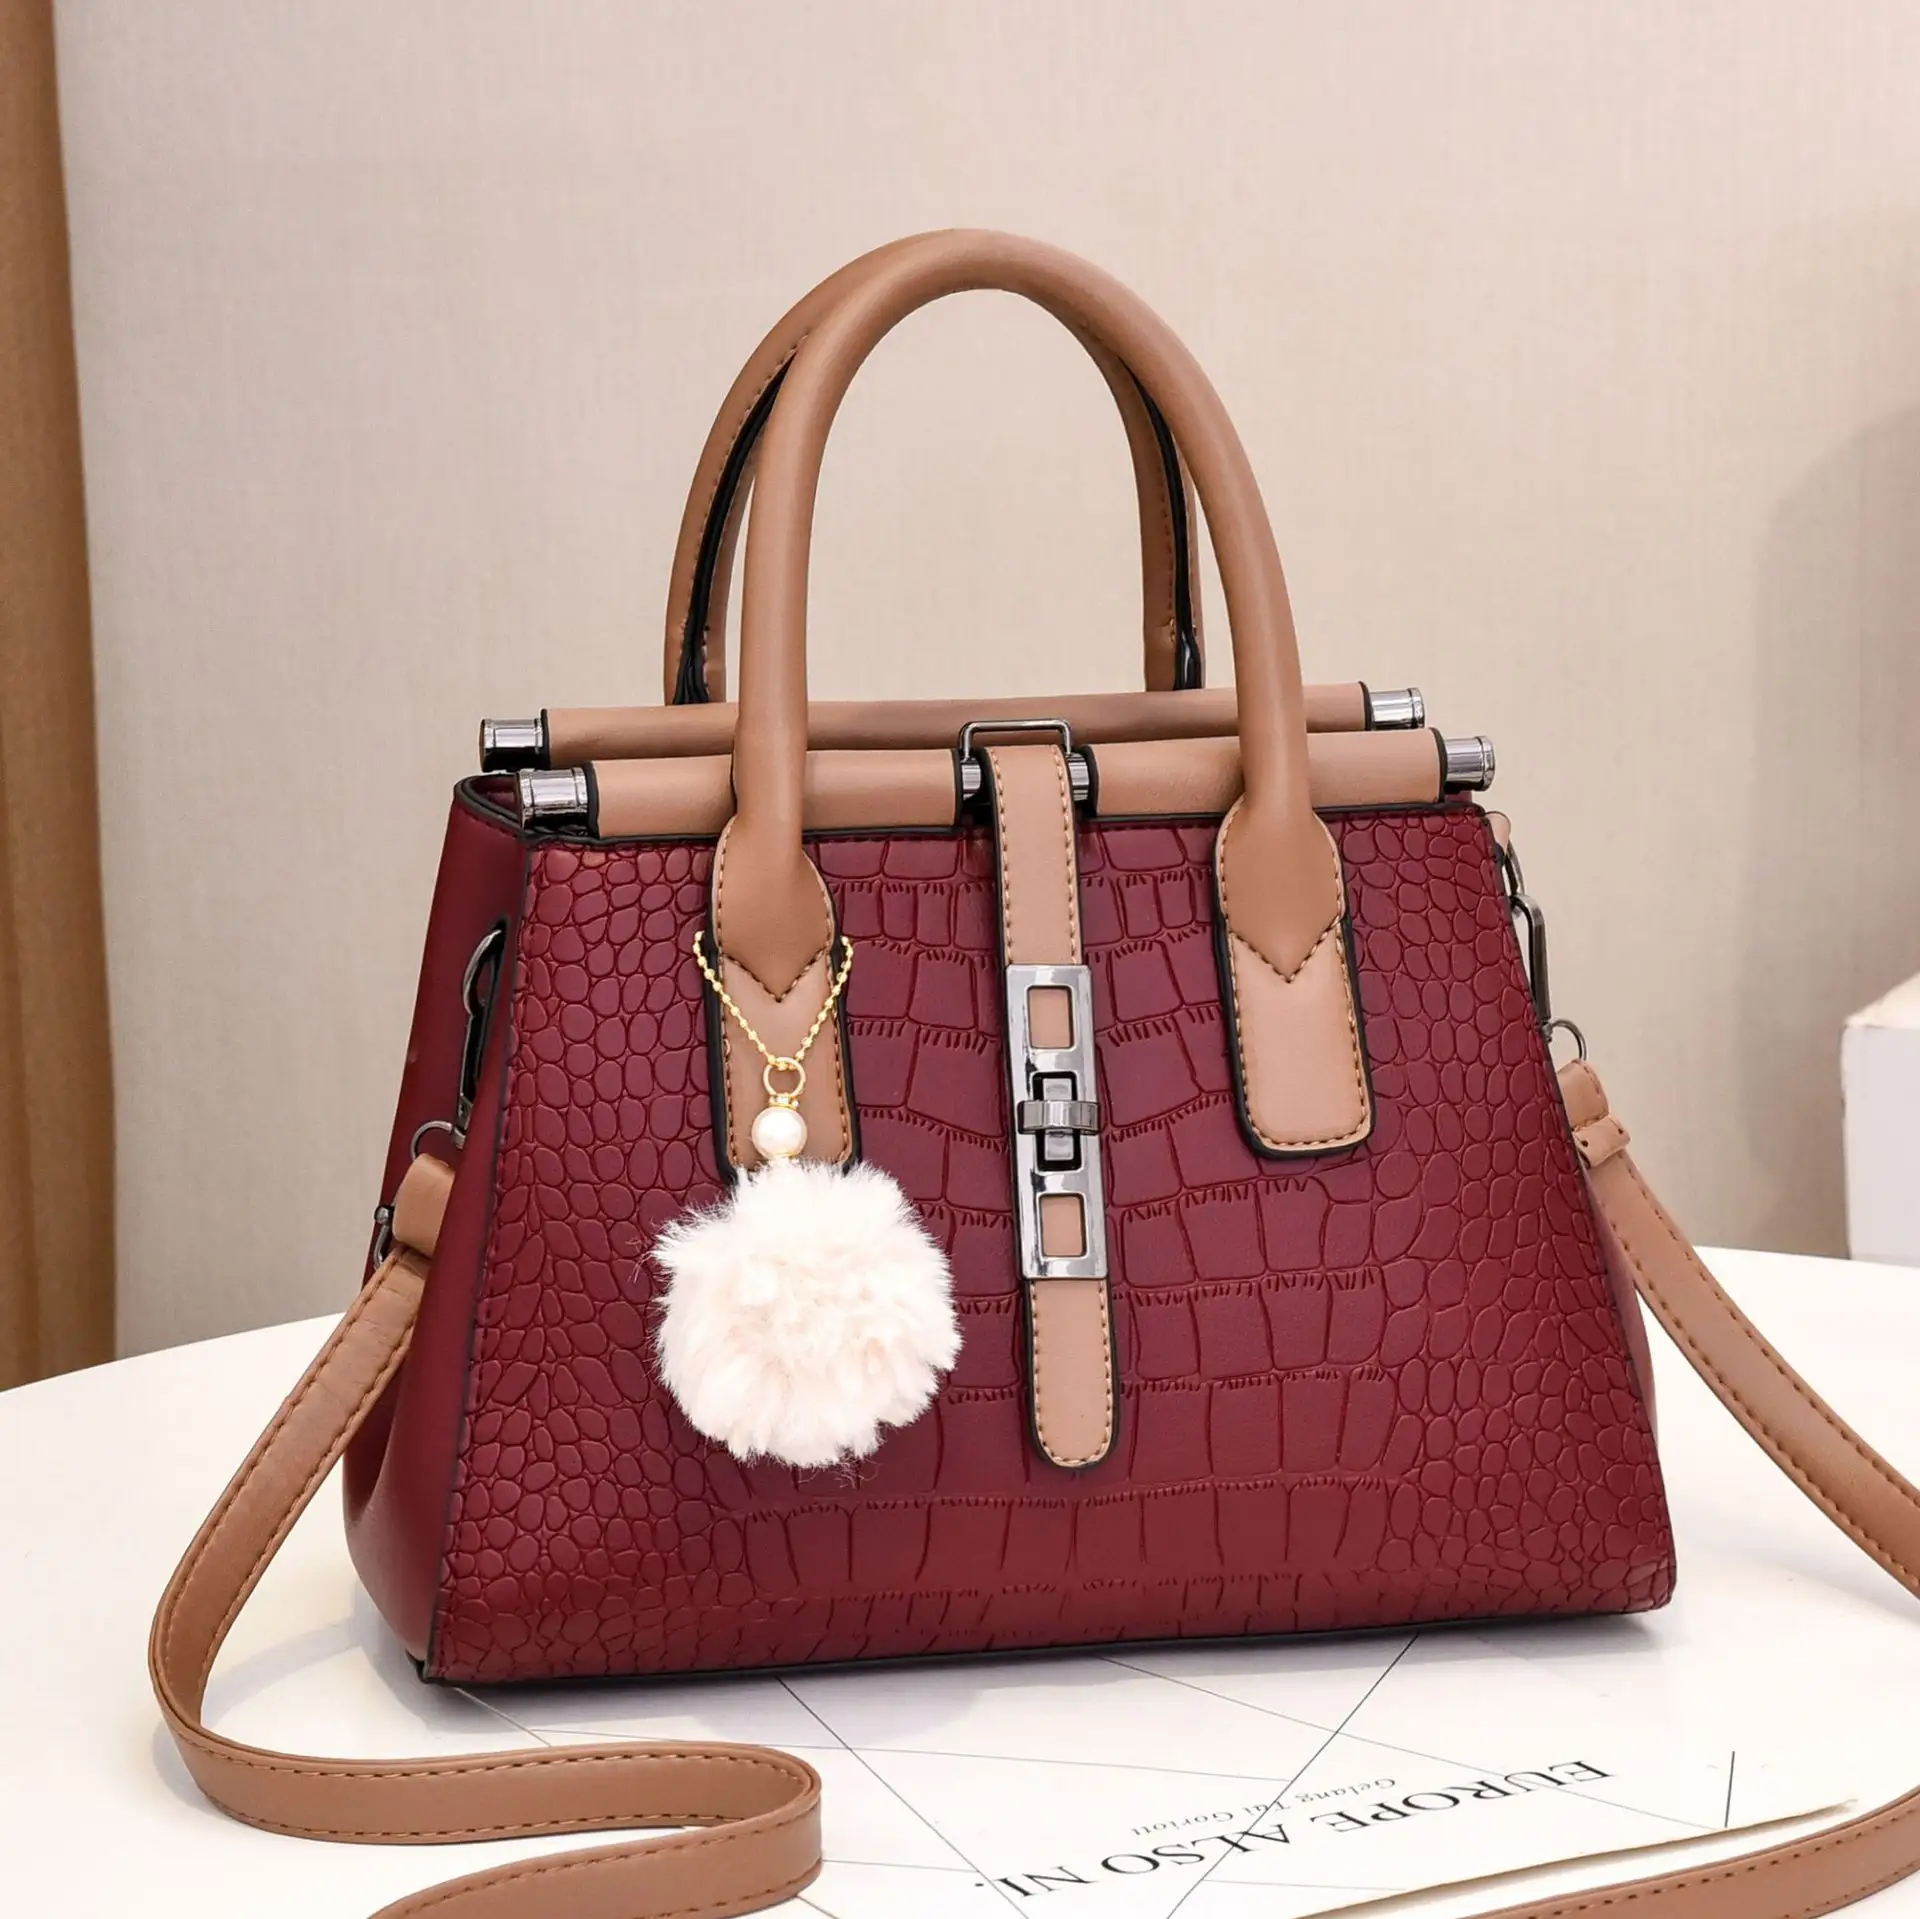 Guess Handbags China Trade,Buy China Direct From Guess Handbags Factories  at Alibaba.com